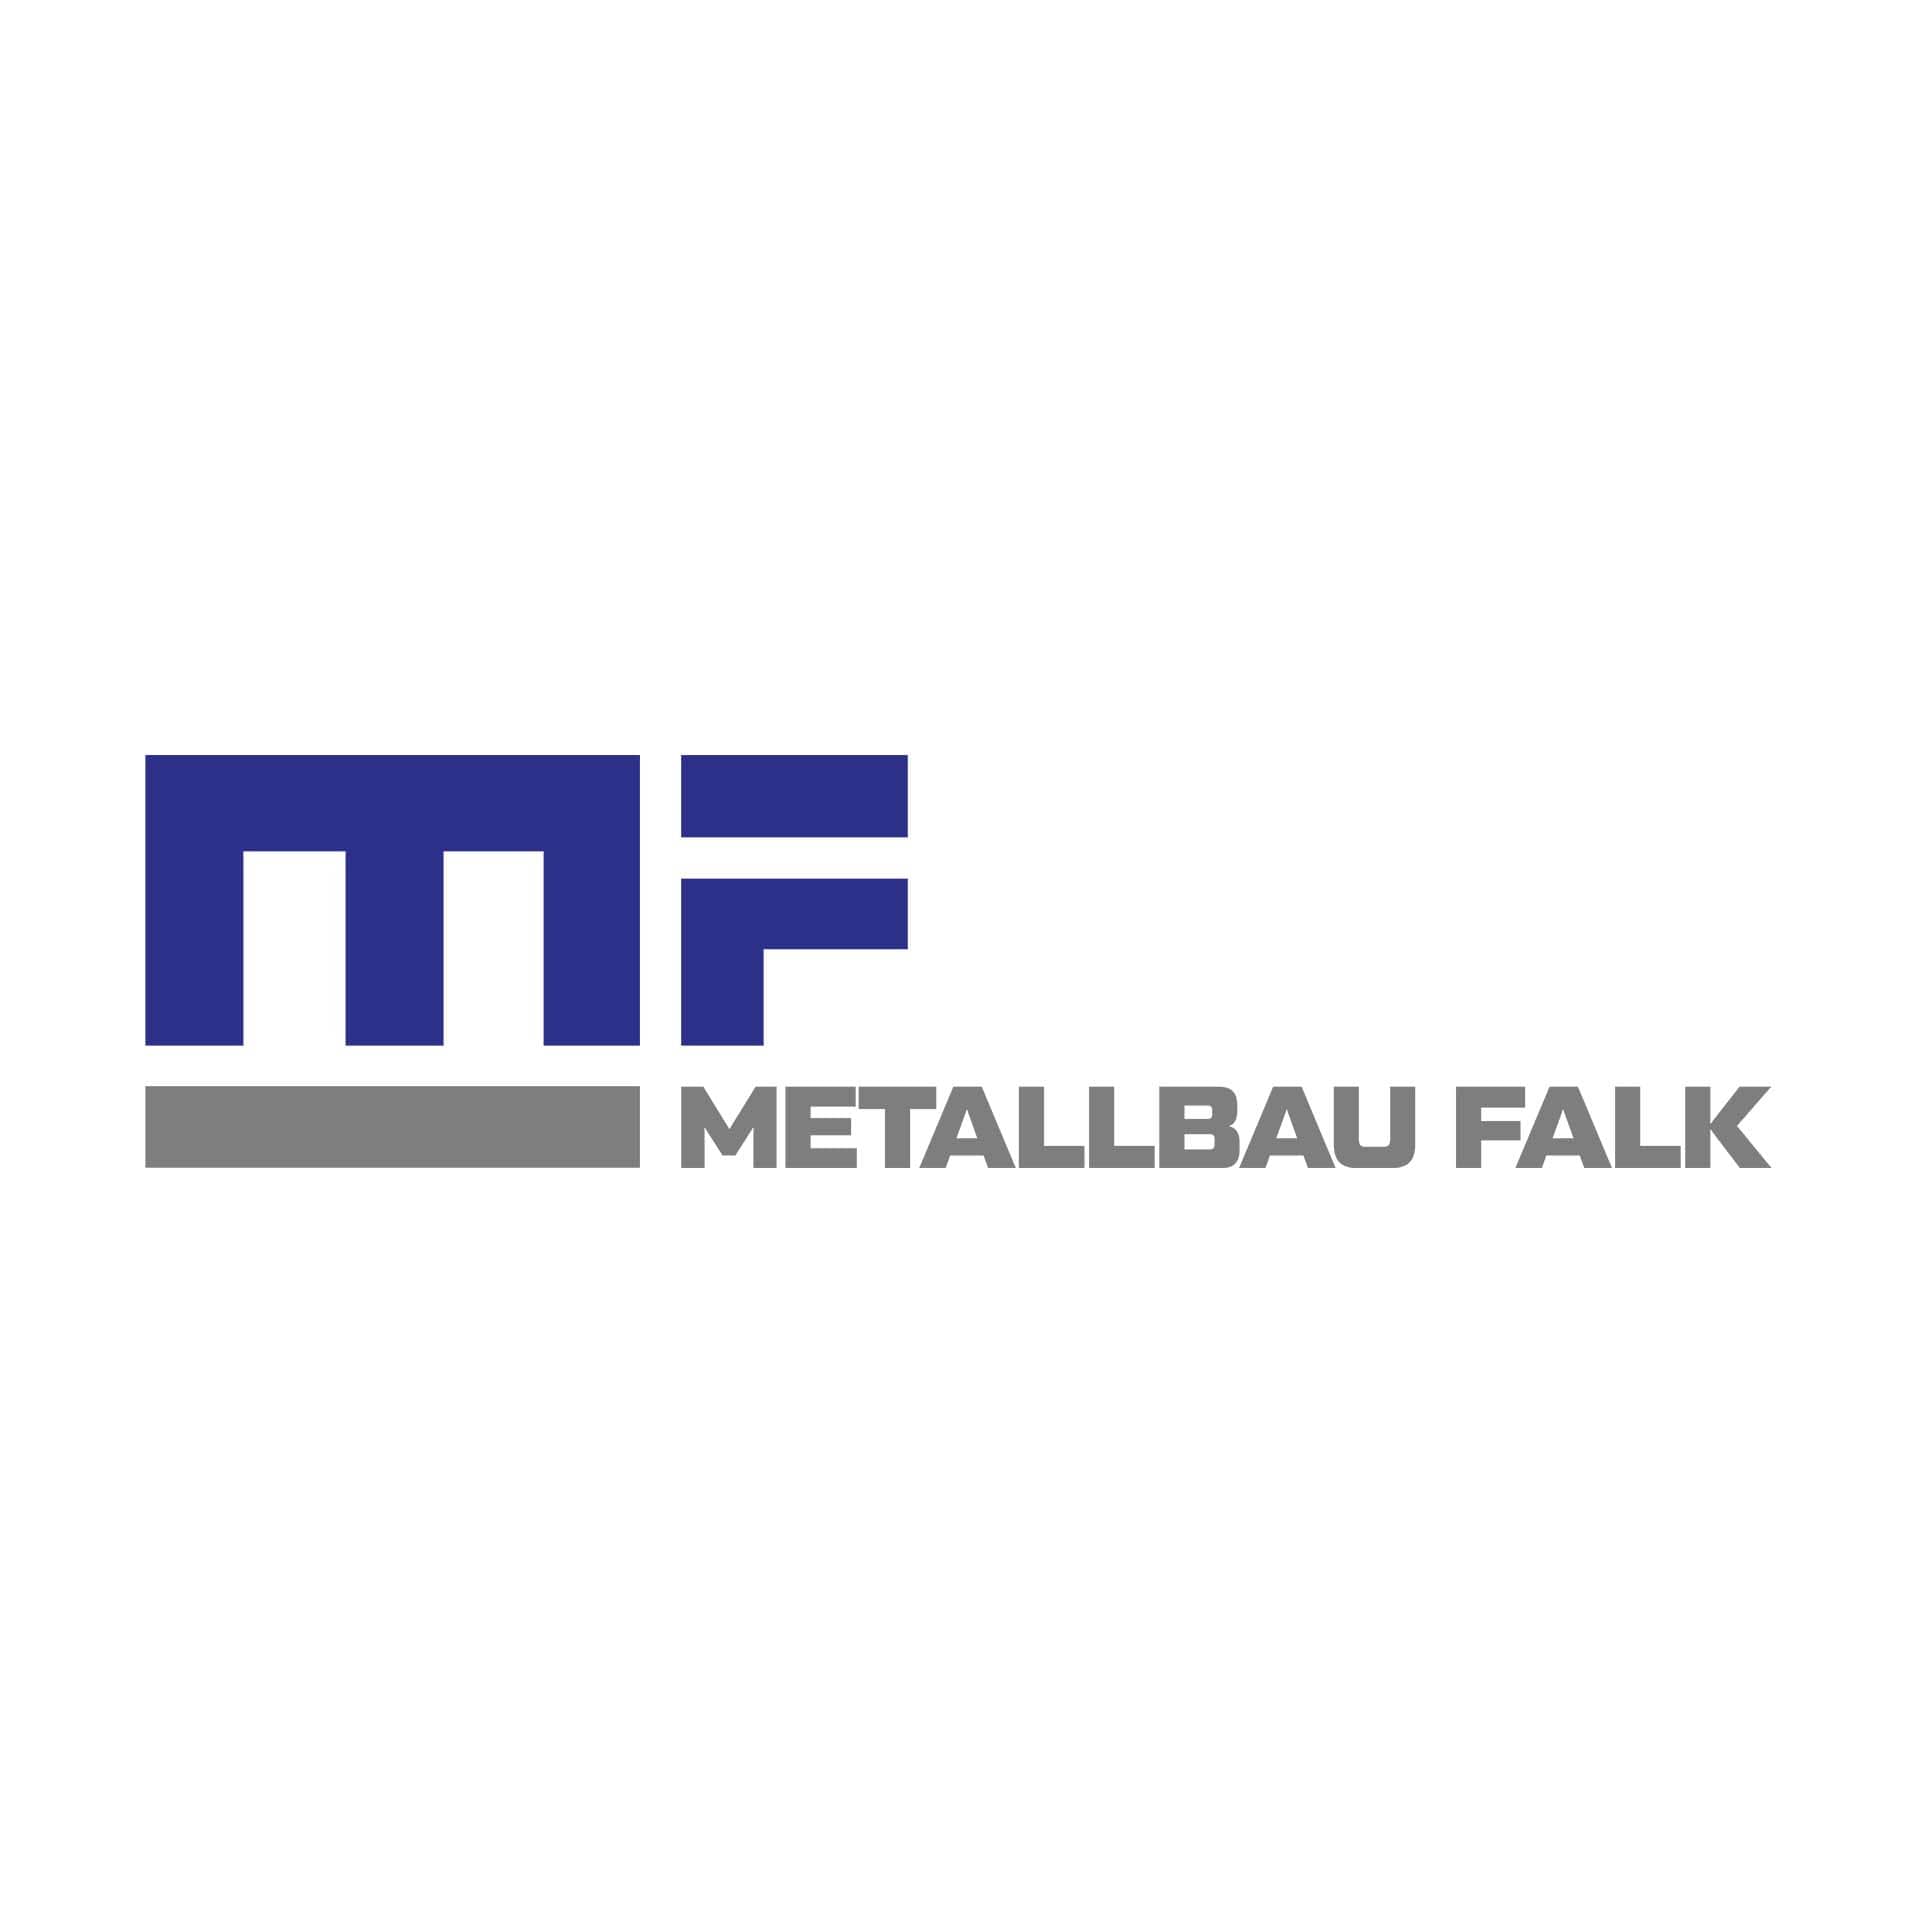 Metallbau Falk in Waldbröl